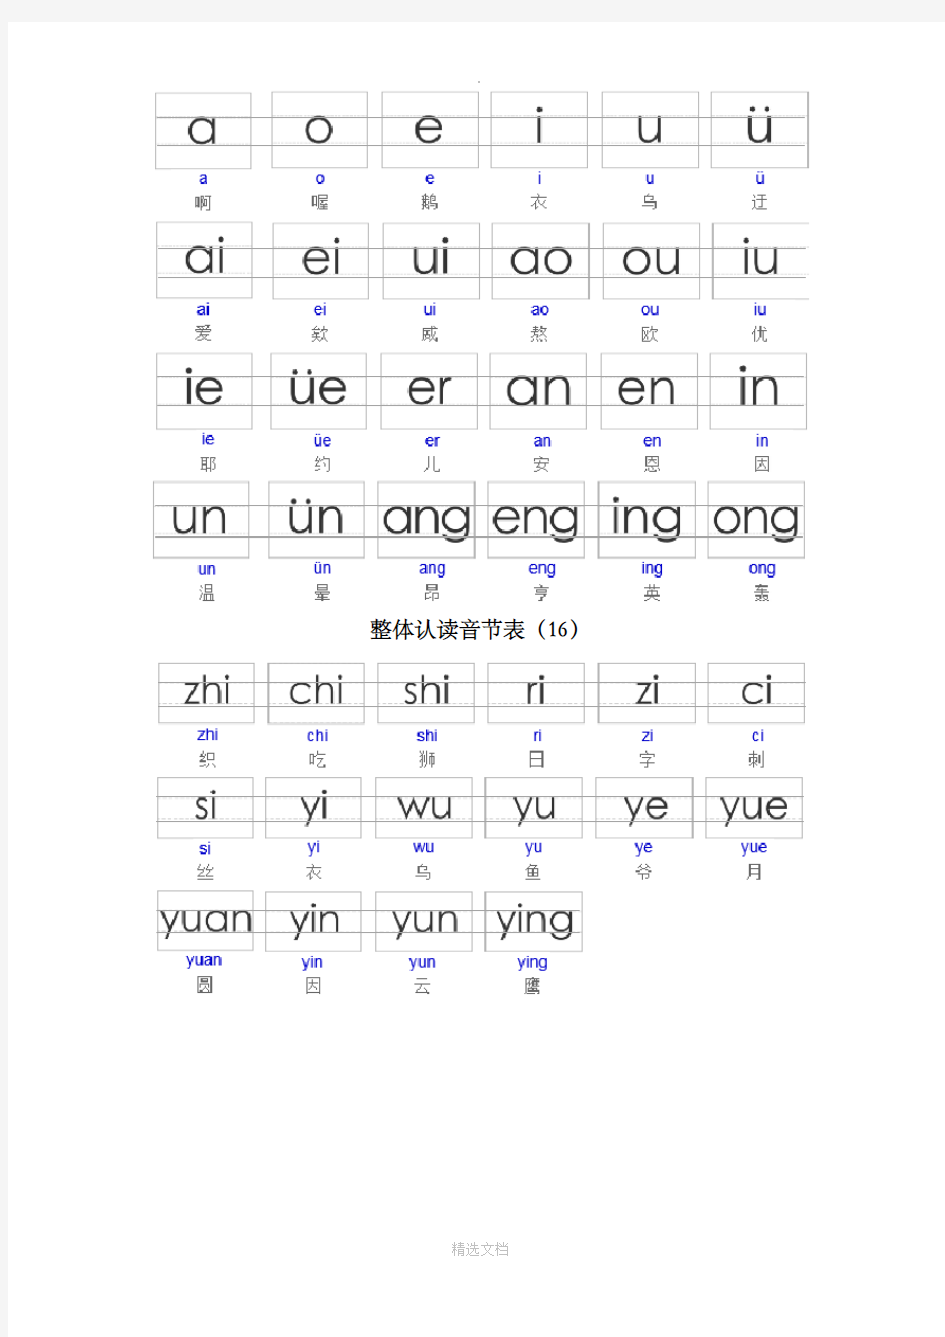 汉字拼音字母表(幼儿园版带写子格式可直接打印)